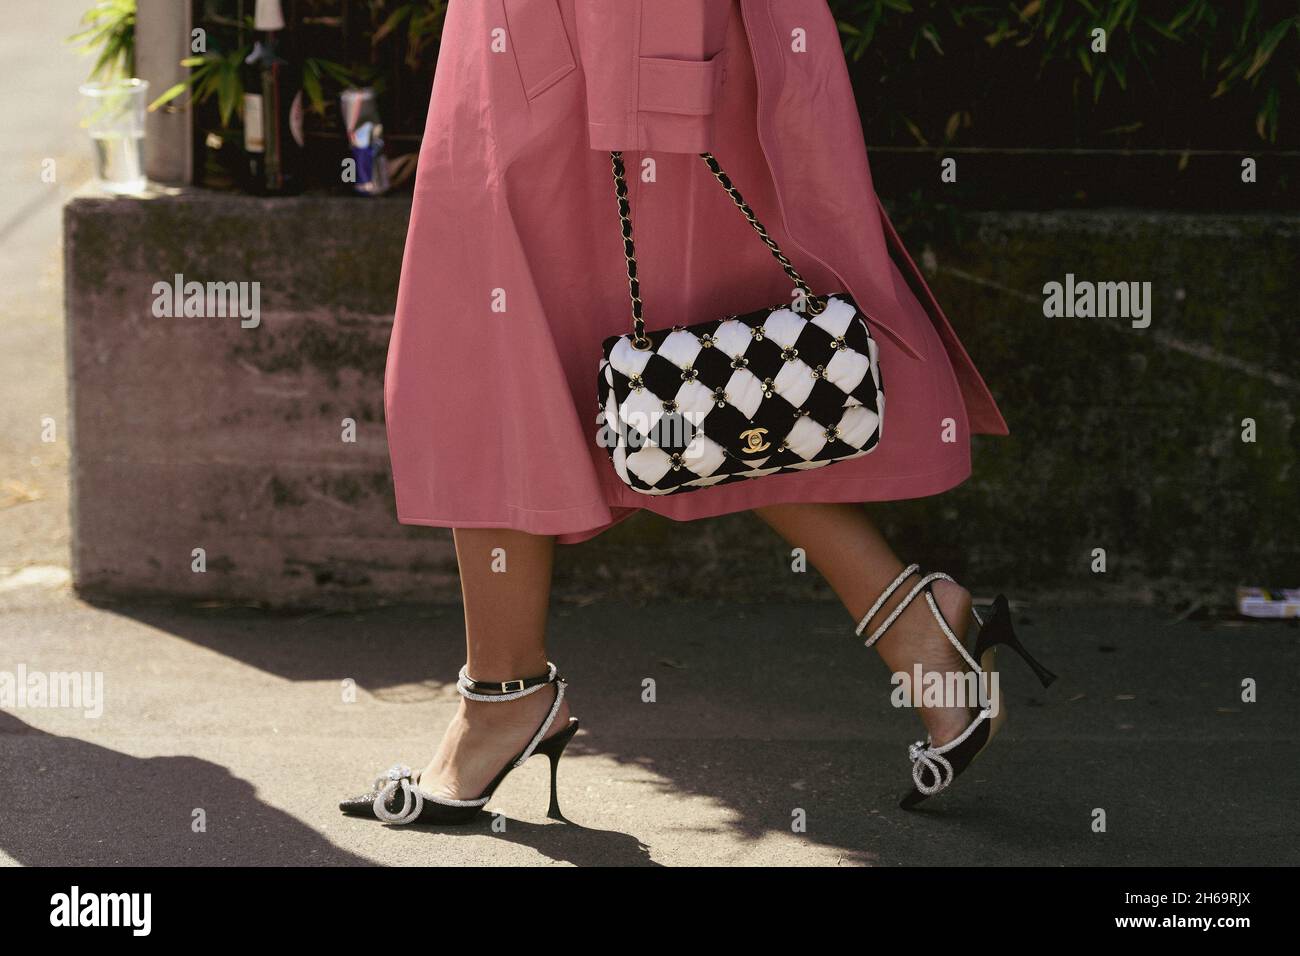 Milan, Italie - 24 septembre 2021: Tenue de style de rue, femme à la mode portant un long manteau rose, un sac à main à carreaux noir et blanc de Chanel, b Banque D'Images